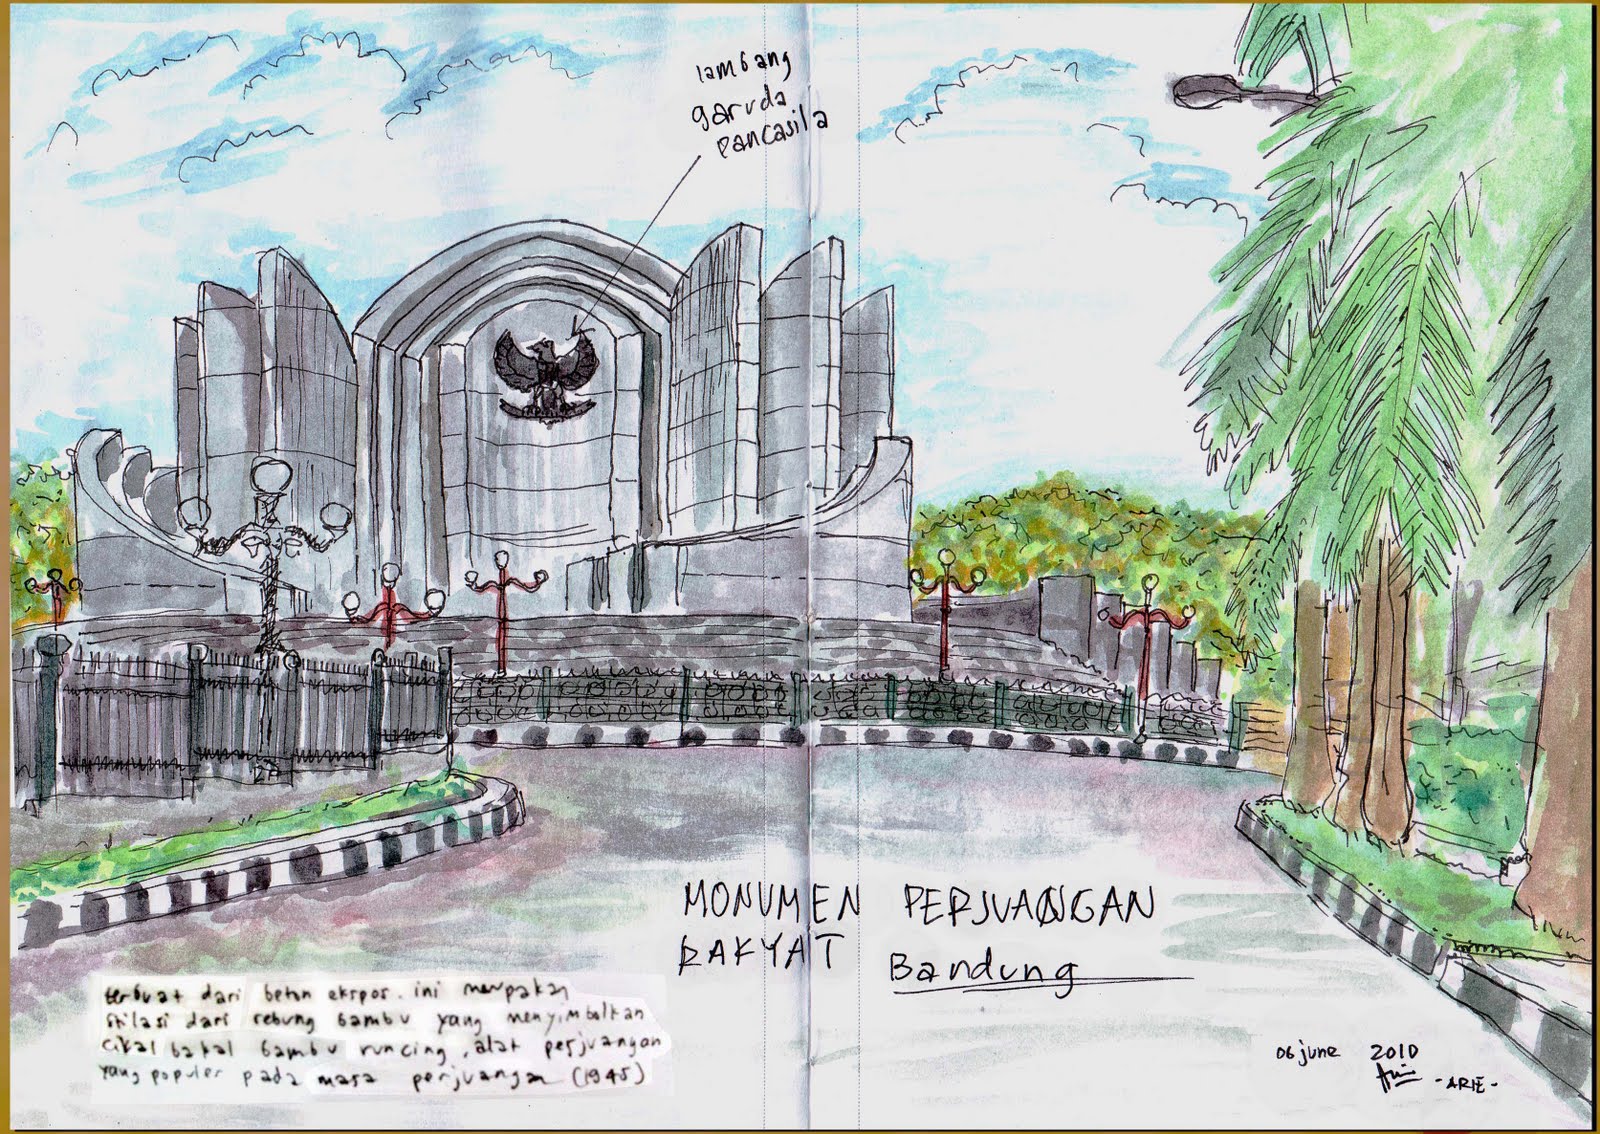 Indonesia s Sketchers Monumen perjuangan bandung